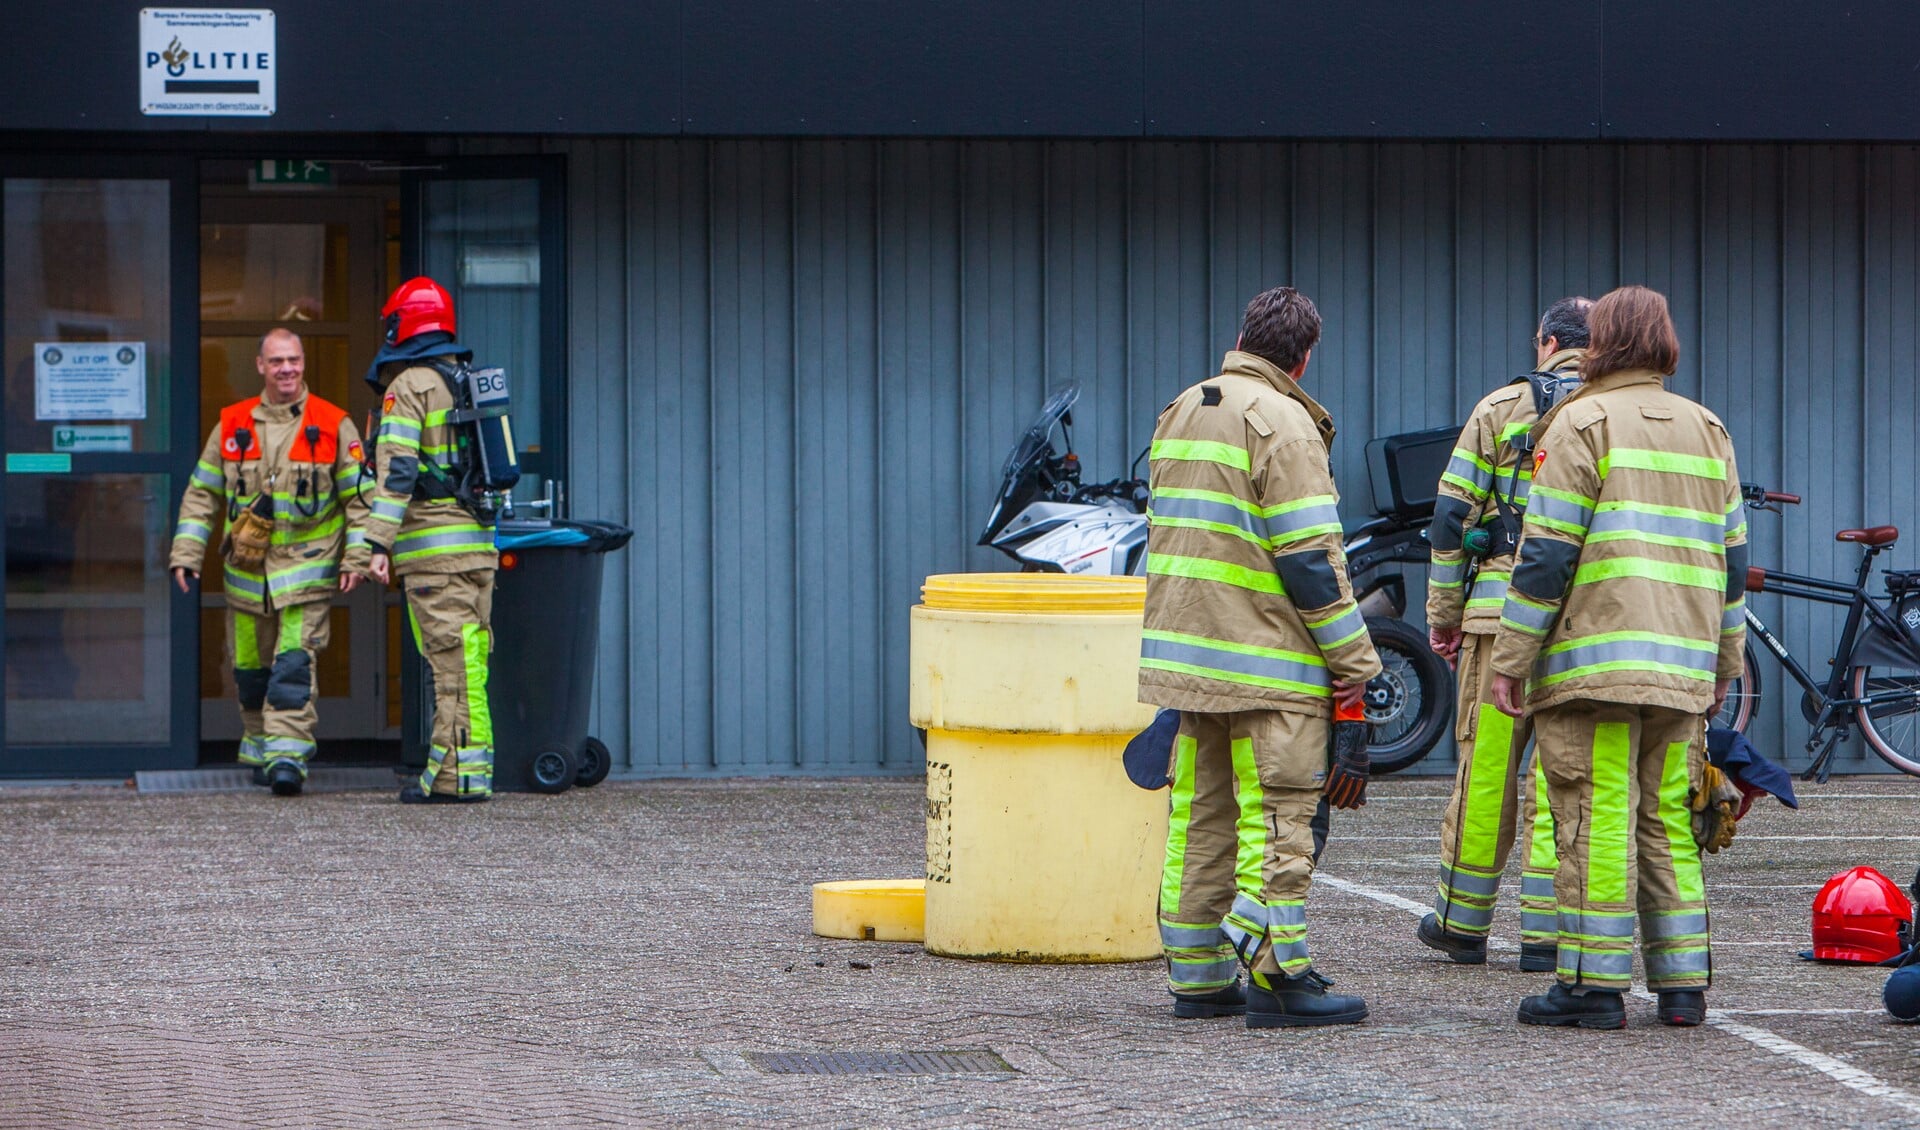 De brandweer wacht buiten met een speciale ton waar de gevaarlijke stof luchtdicht in kon worden afgevoerd.